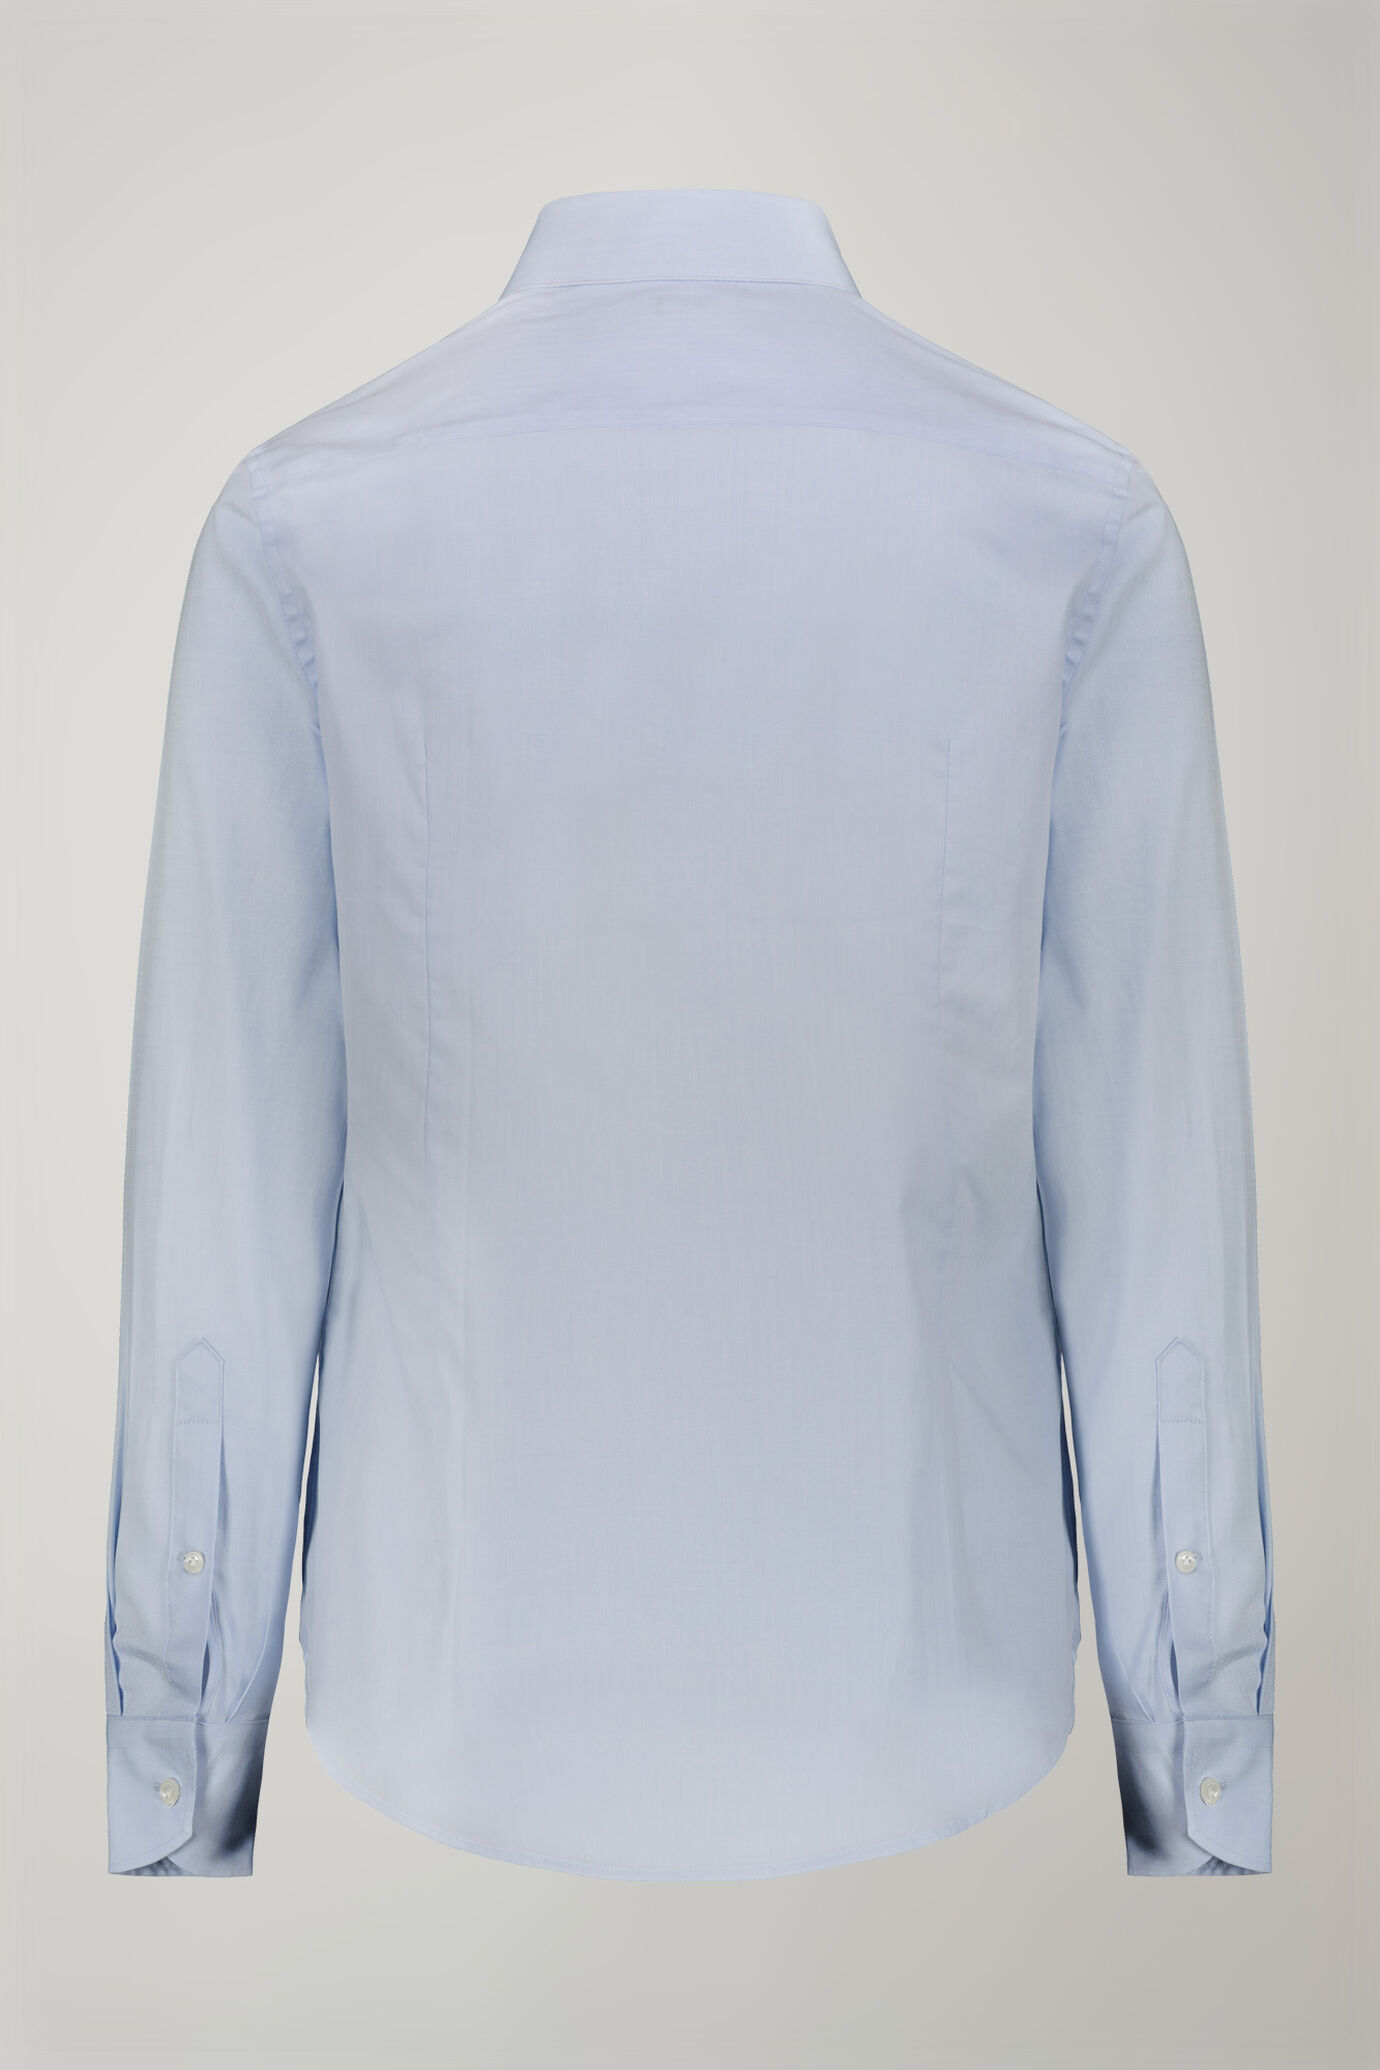 Camicia uomo collo classico 100% cotone tessuto spina di pesce tinta unita regular fit image number 6